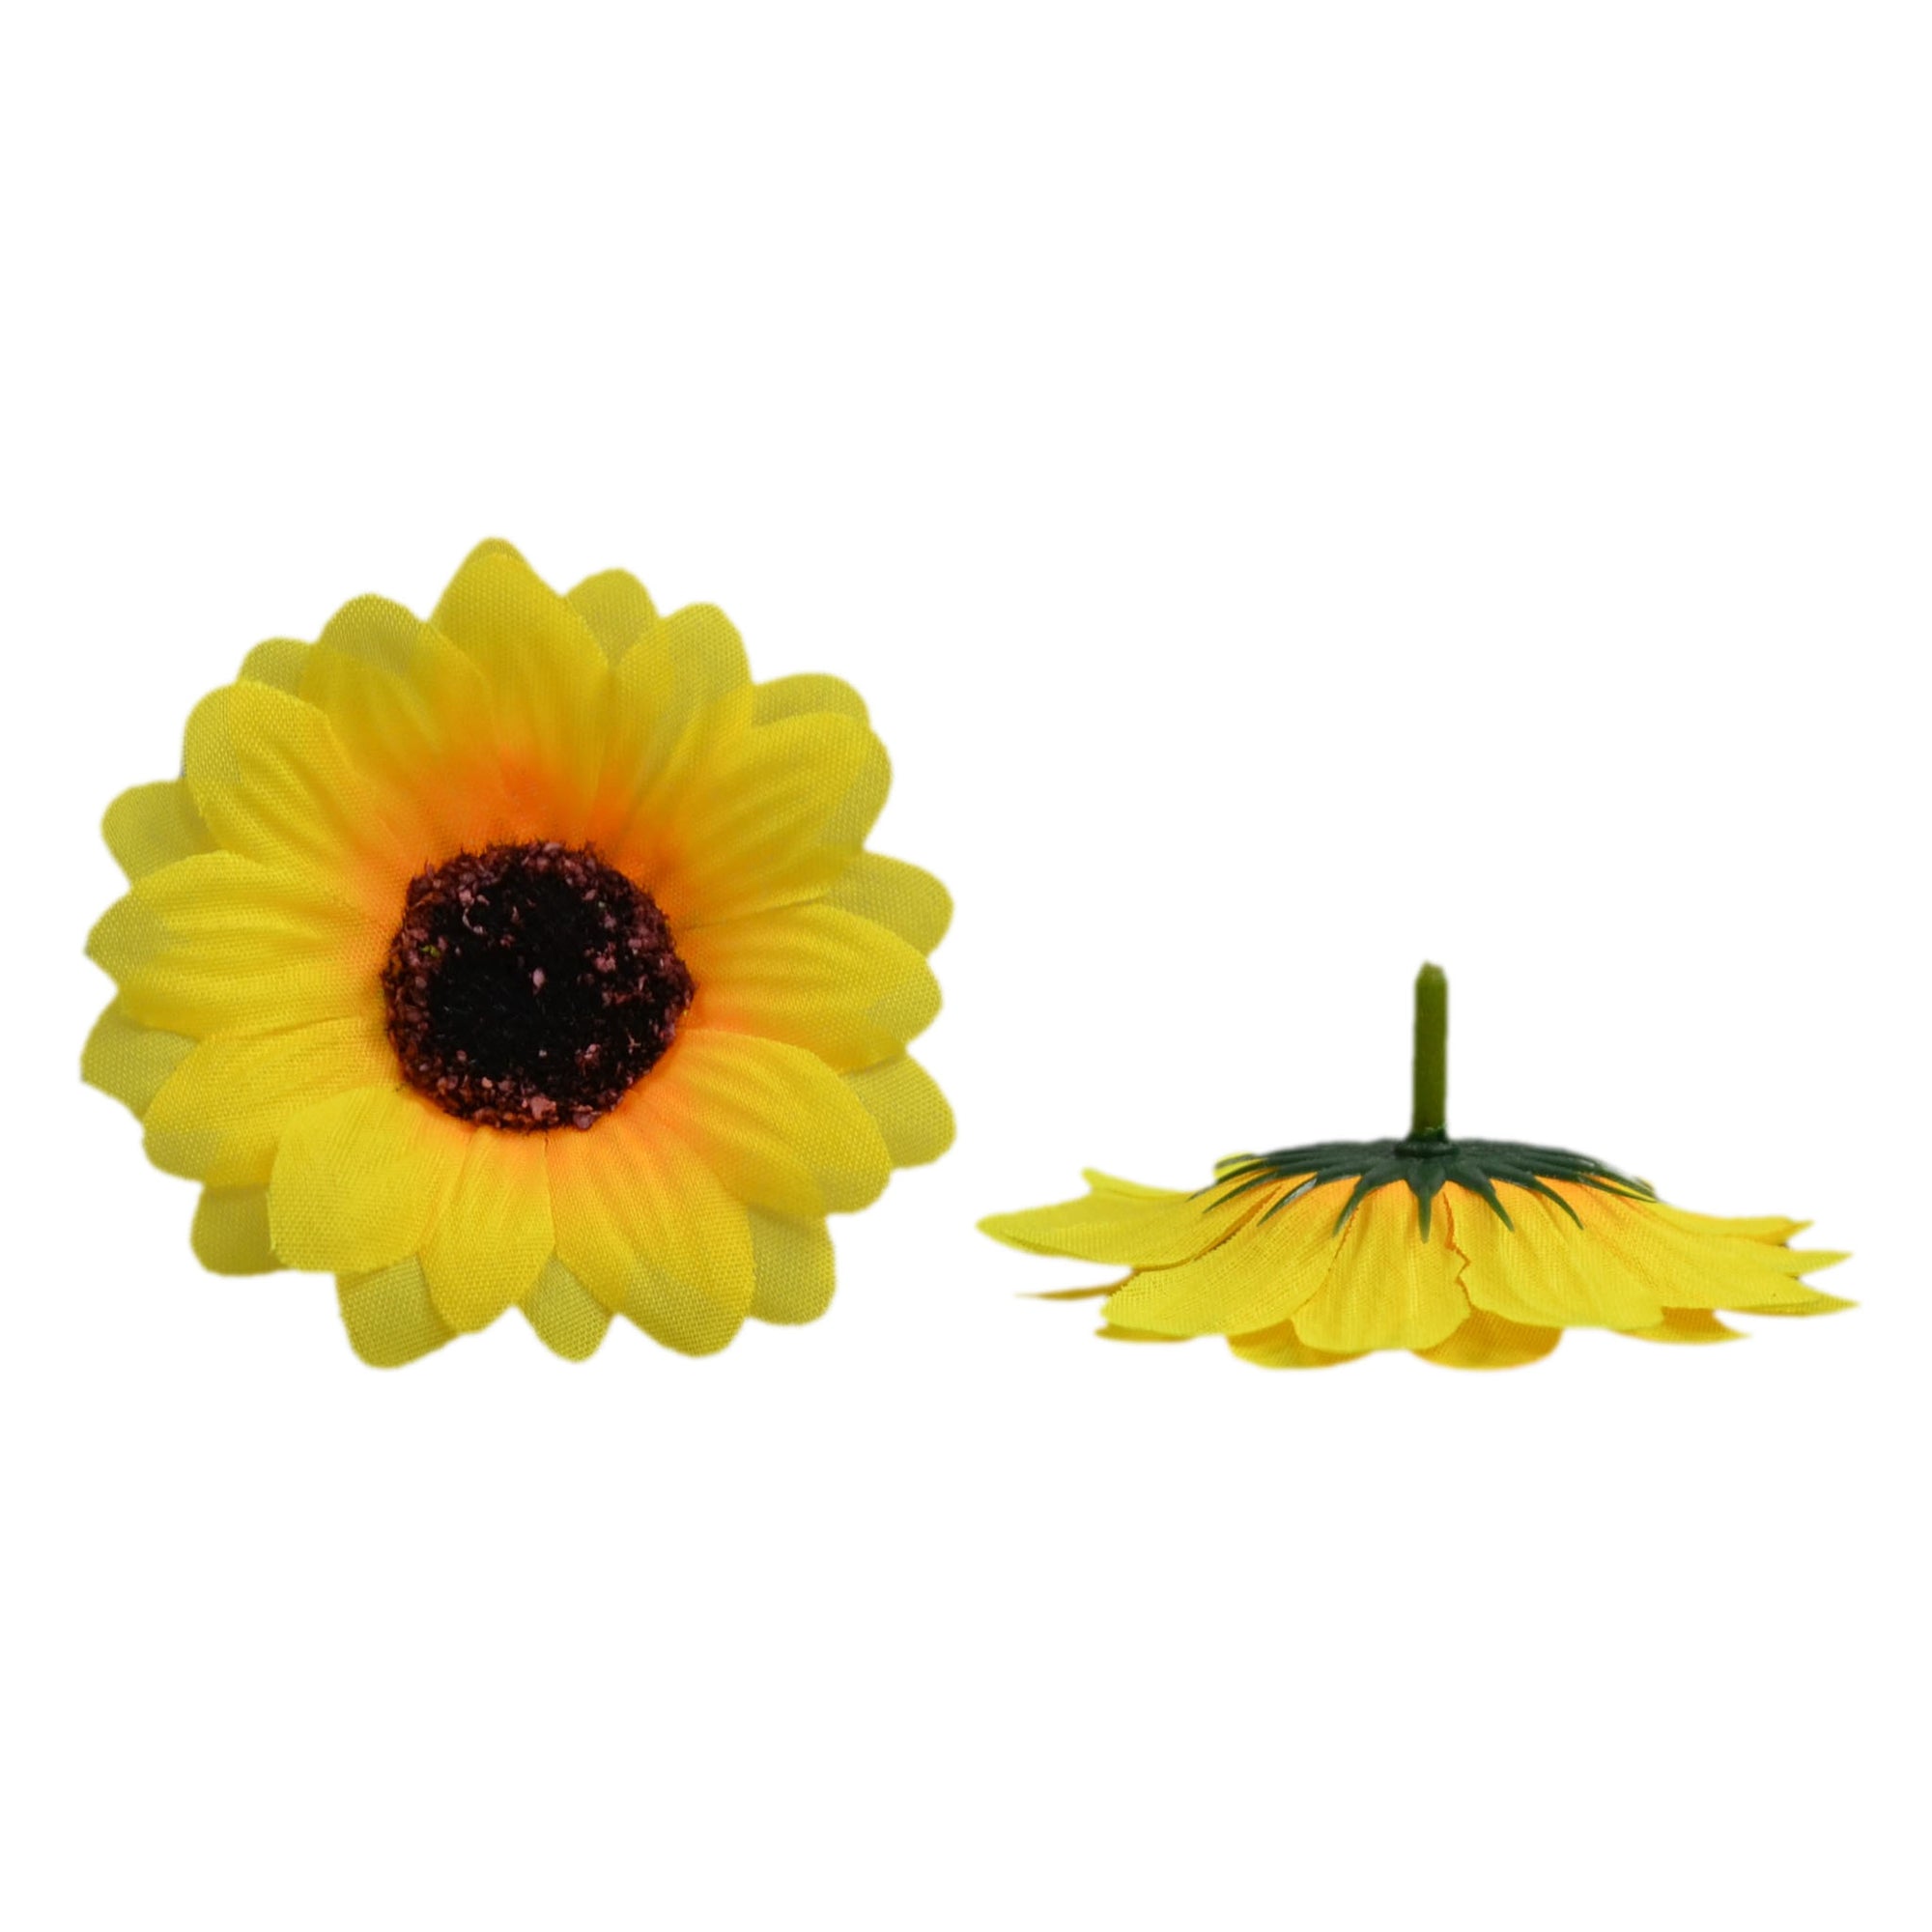 Artificial Sunflower Silk Sunflowers 7-26cm